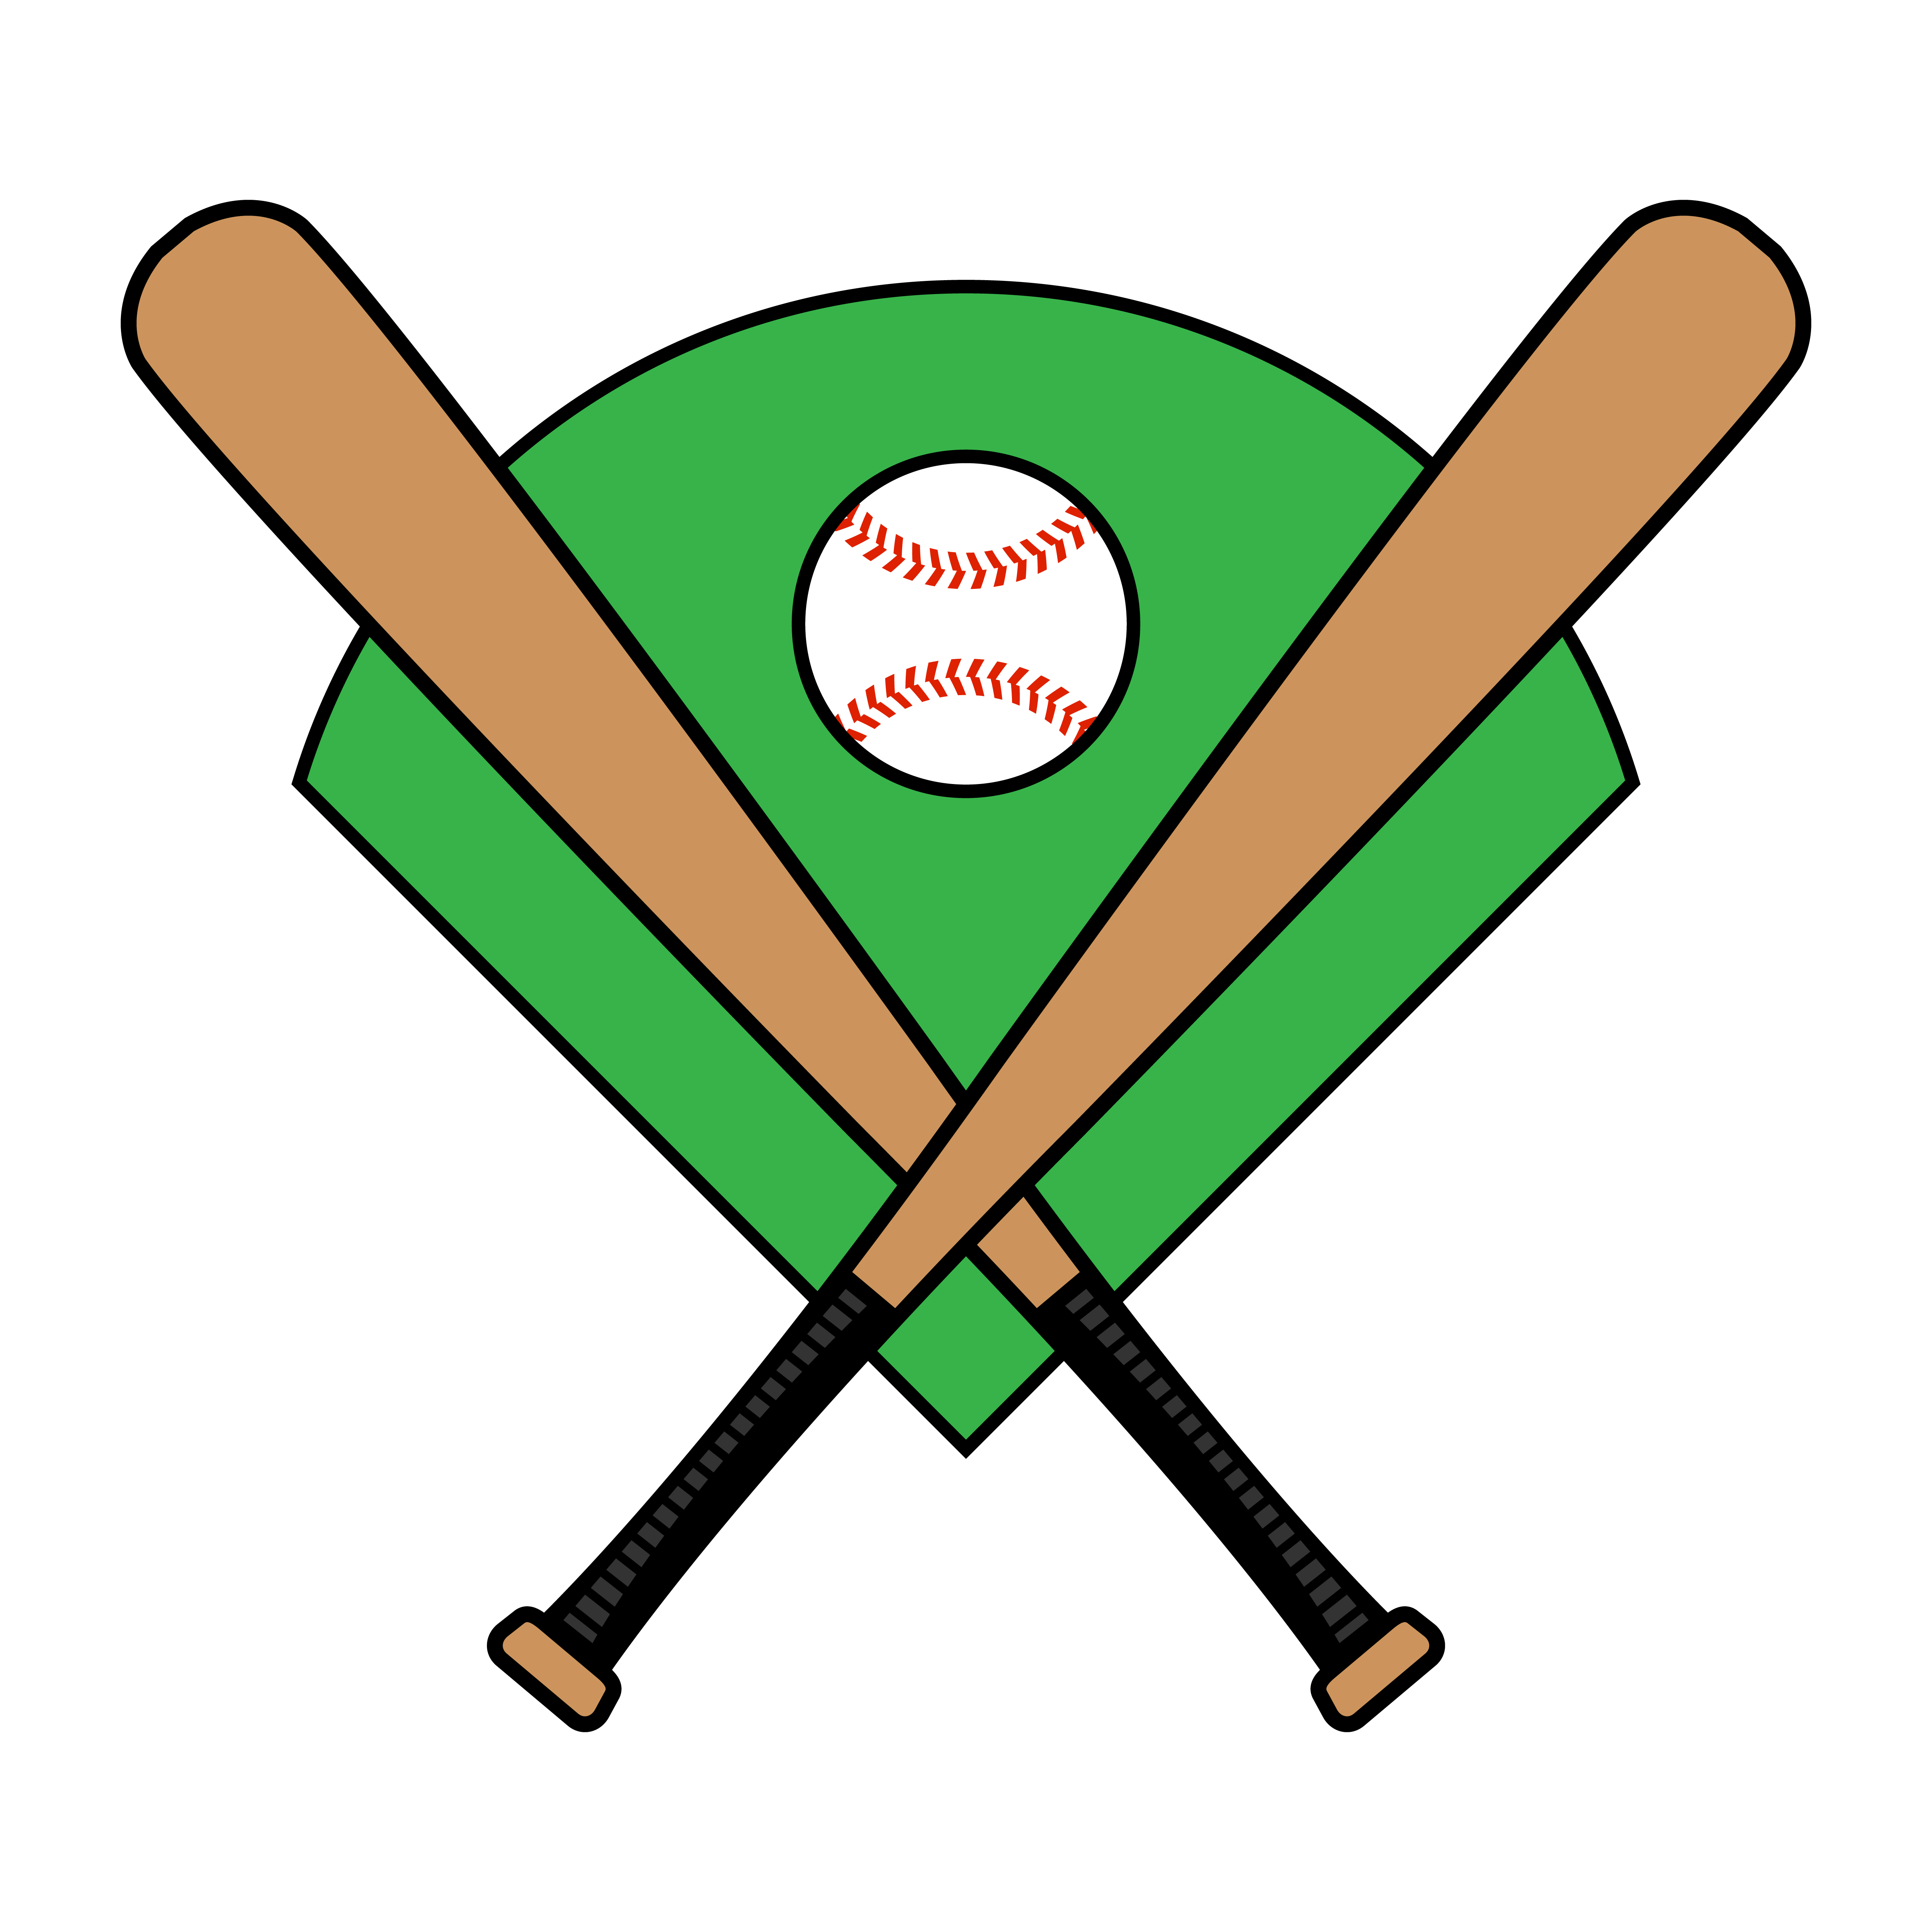 Download Baseball Bat - Download Free Vectors, Clipart Graphics & Vector Art